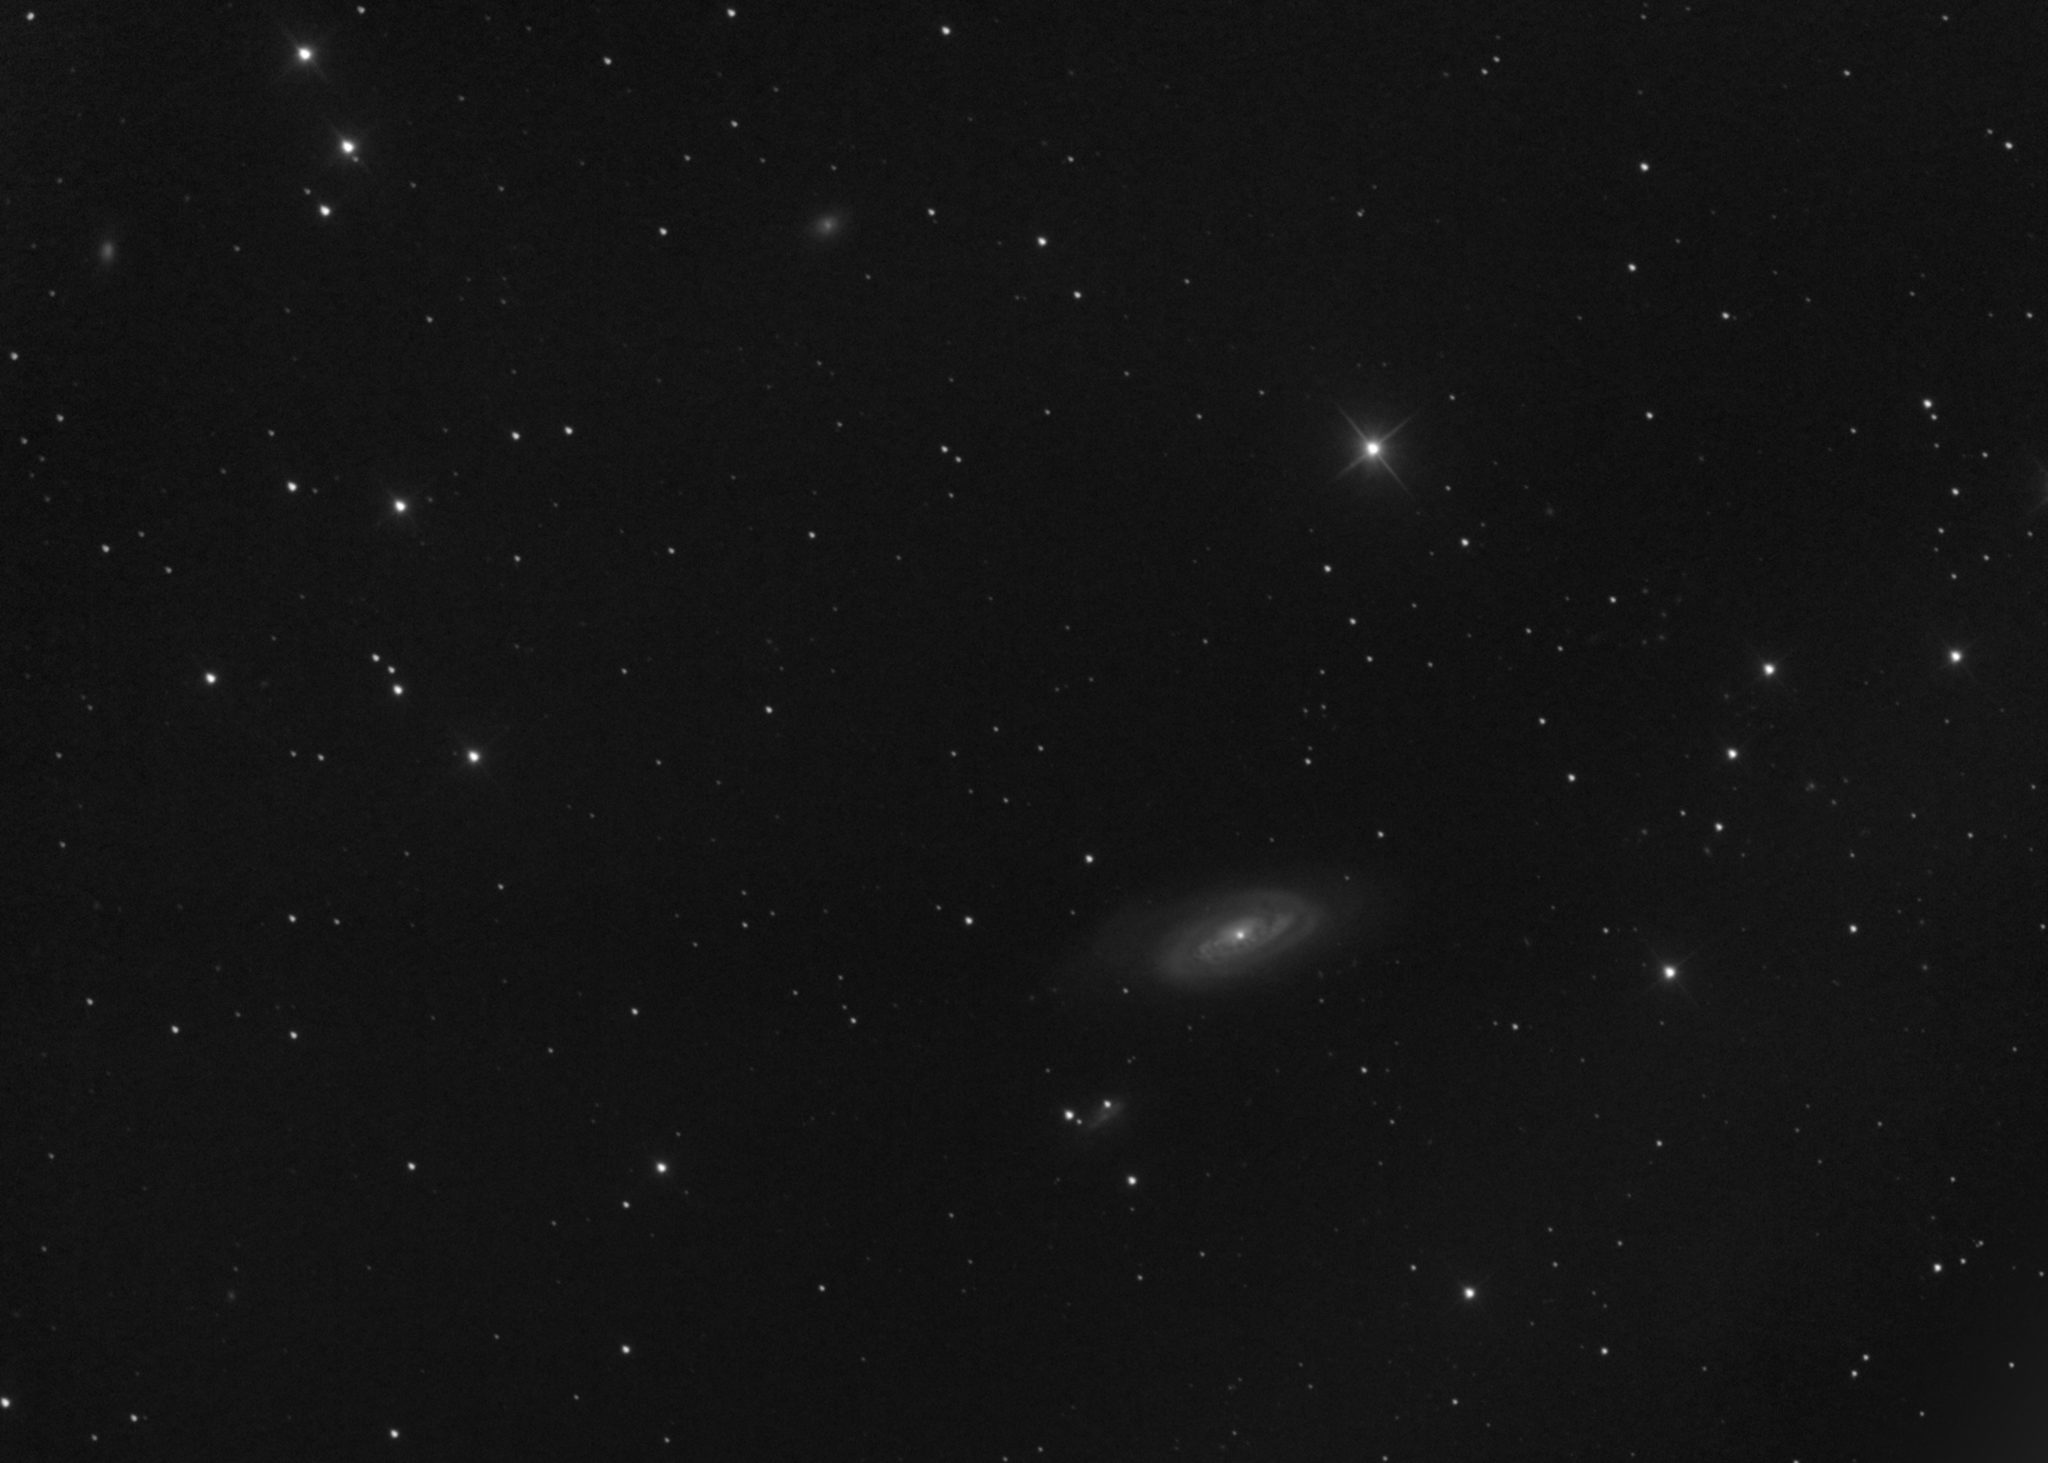 Messier 90 dans la constellation de la Vierge